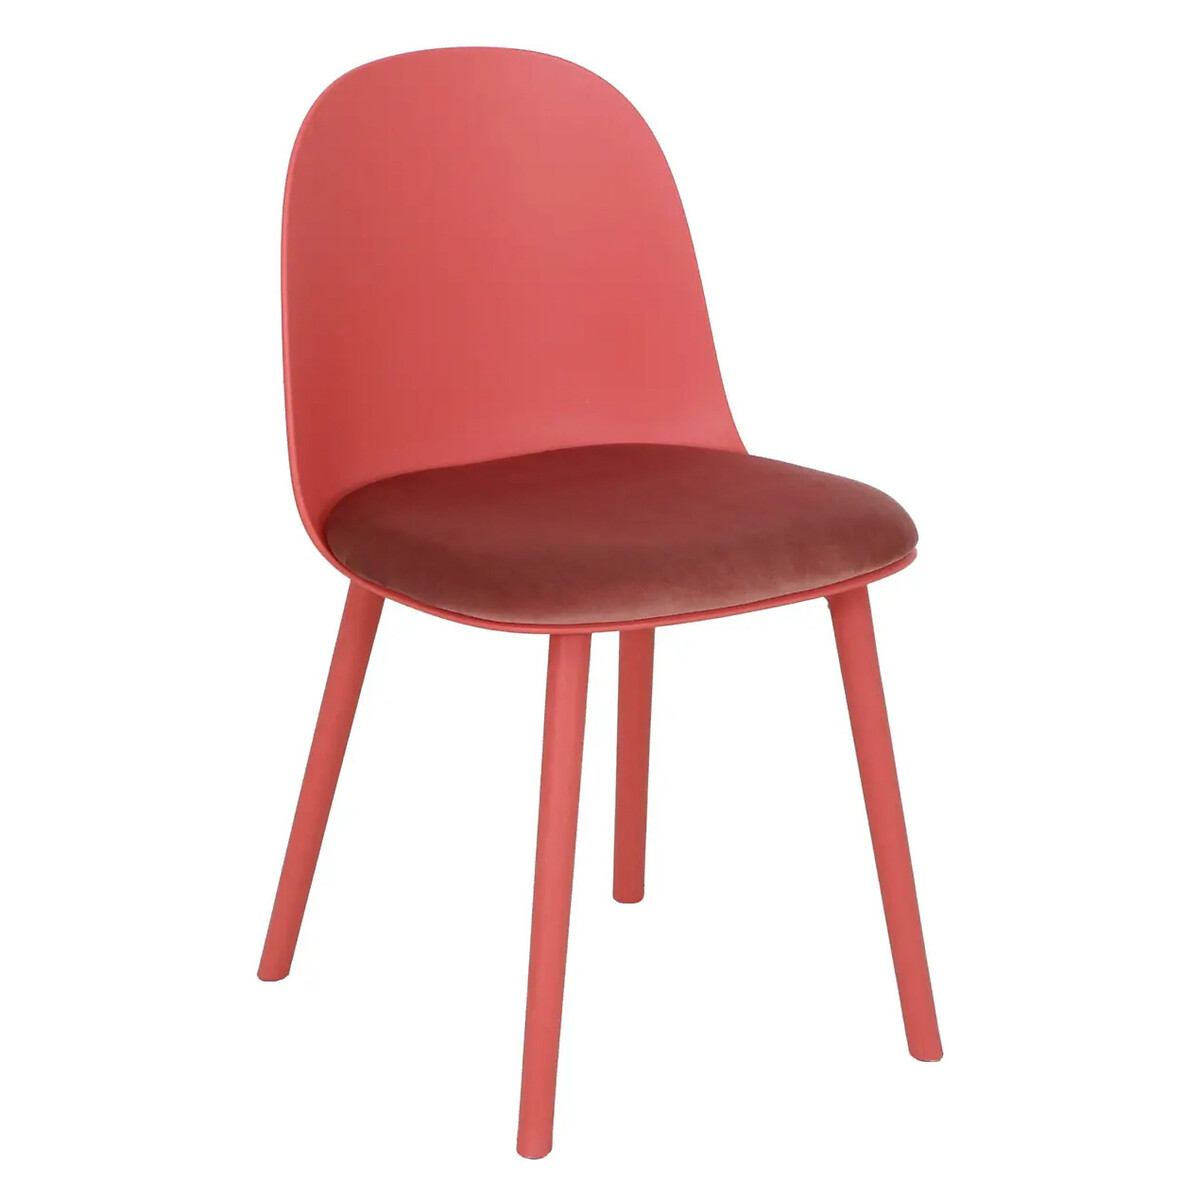 Стул Amato единый размер розовый стул eirill единый размер розовый